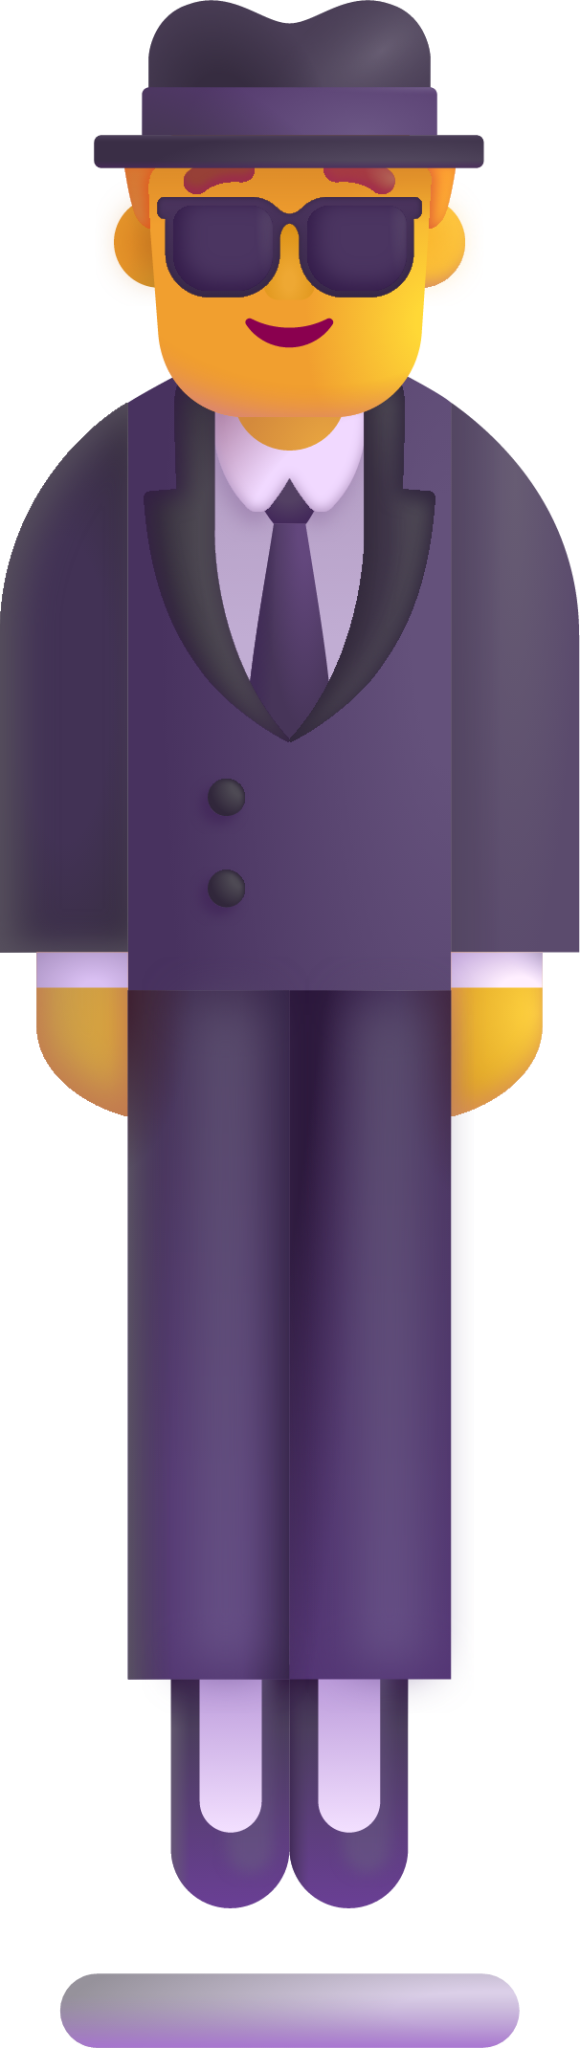 person in suit levitating default emoji